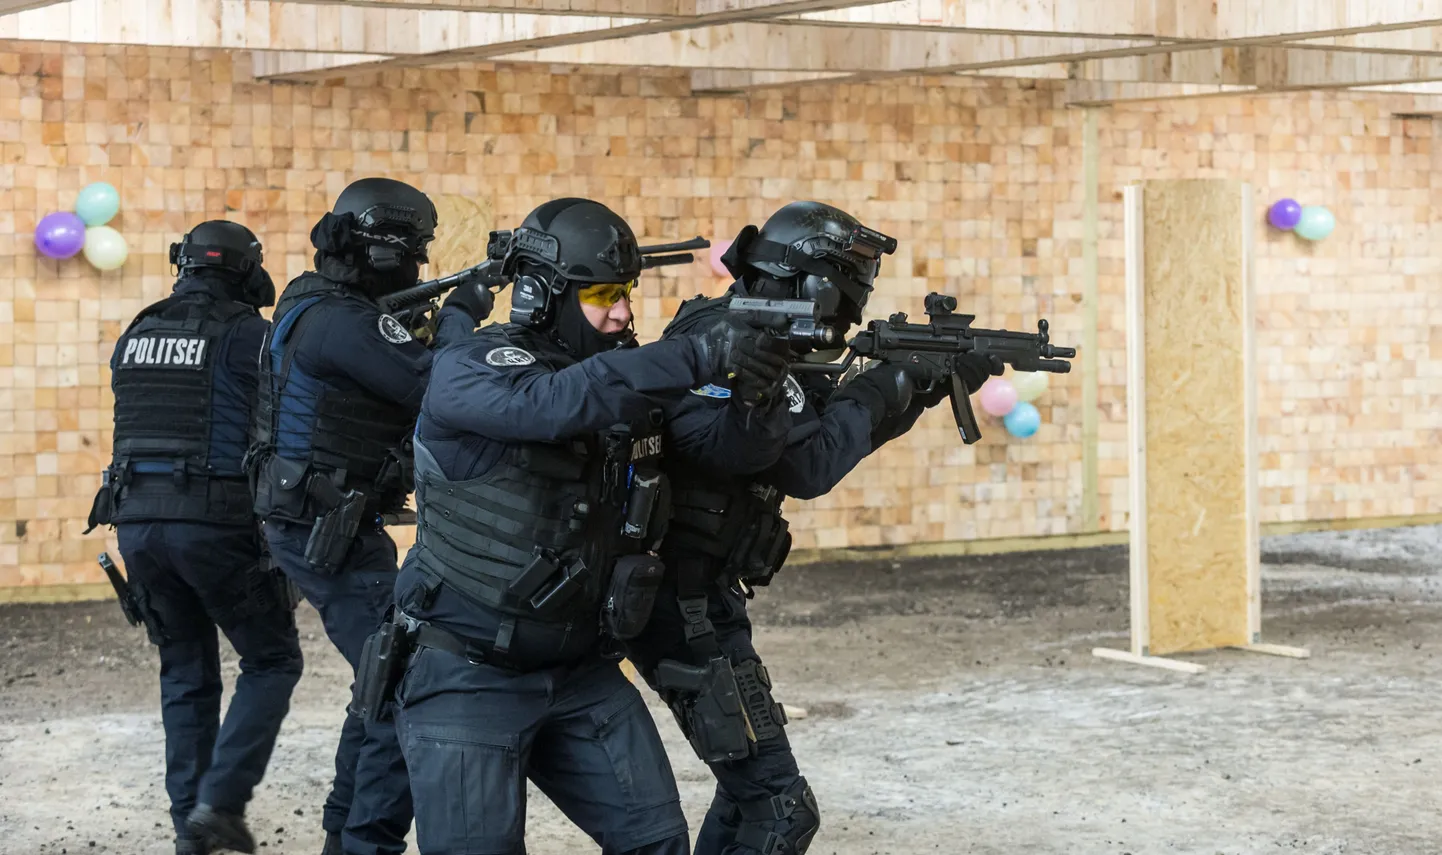 Põhja prefektuuri kiirreageerimisüksus näitas, milliseid võimalusi Paikuse politseikoolis avatud Eesti politsei kõige moodsam lasketiir pakkuda suudab.